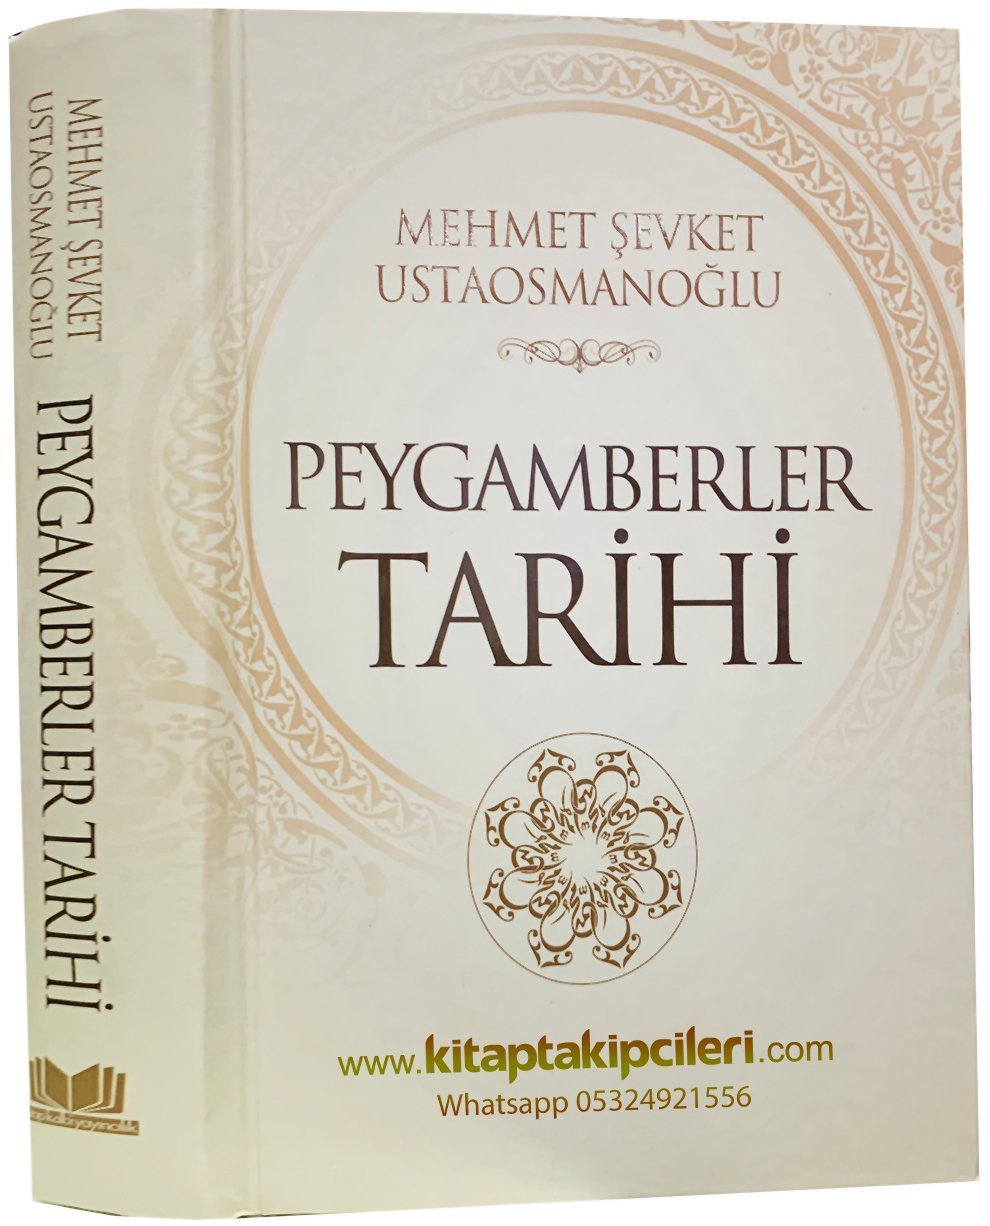 Peygamberler Tarihi, Mehmet Şevket Ustaosmanoğlu